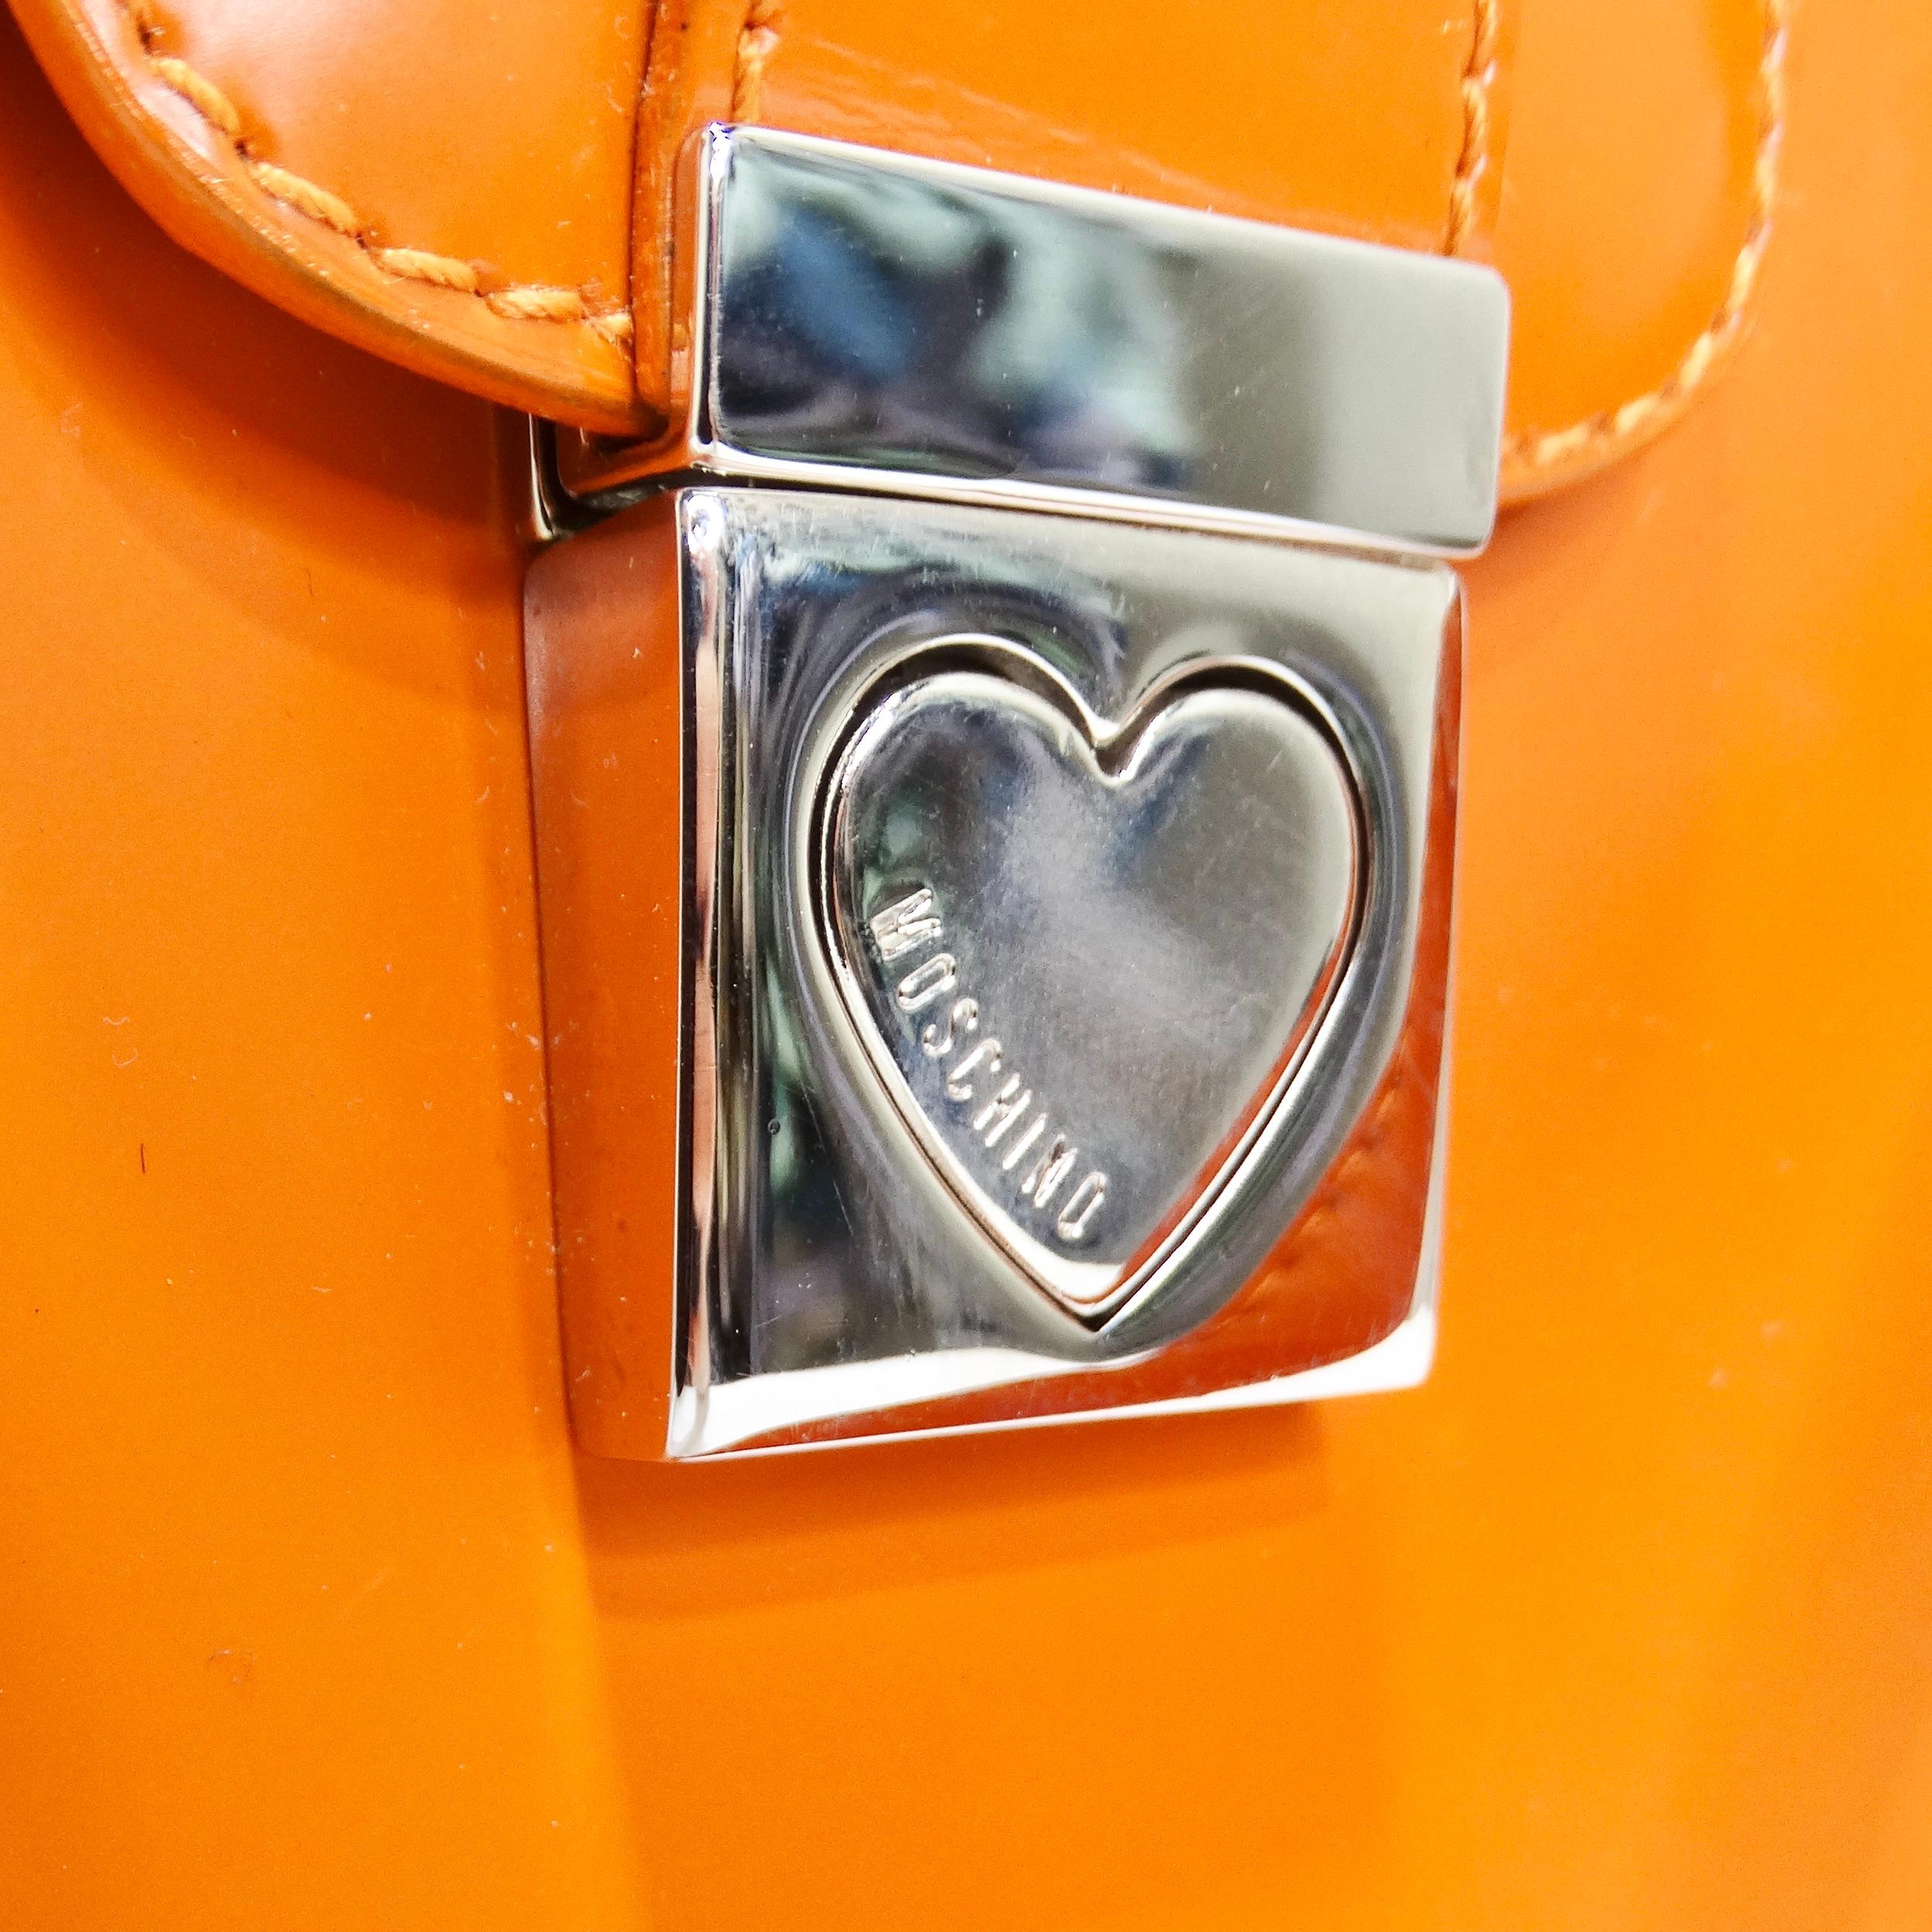 Voici le sac à main en cuir Moschino Orange Top Handle - une déclaration de mode qui allie style audacieux et praticité. Libérez la fashionista qui sommeille en vous avec ce sac à main en forme de croissant dans une teinte orange vibrante. Fabriqué